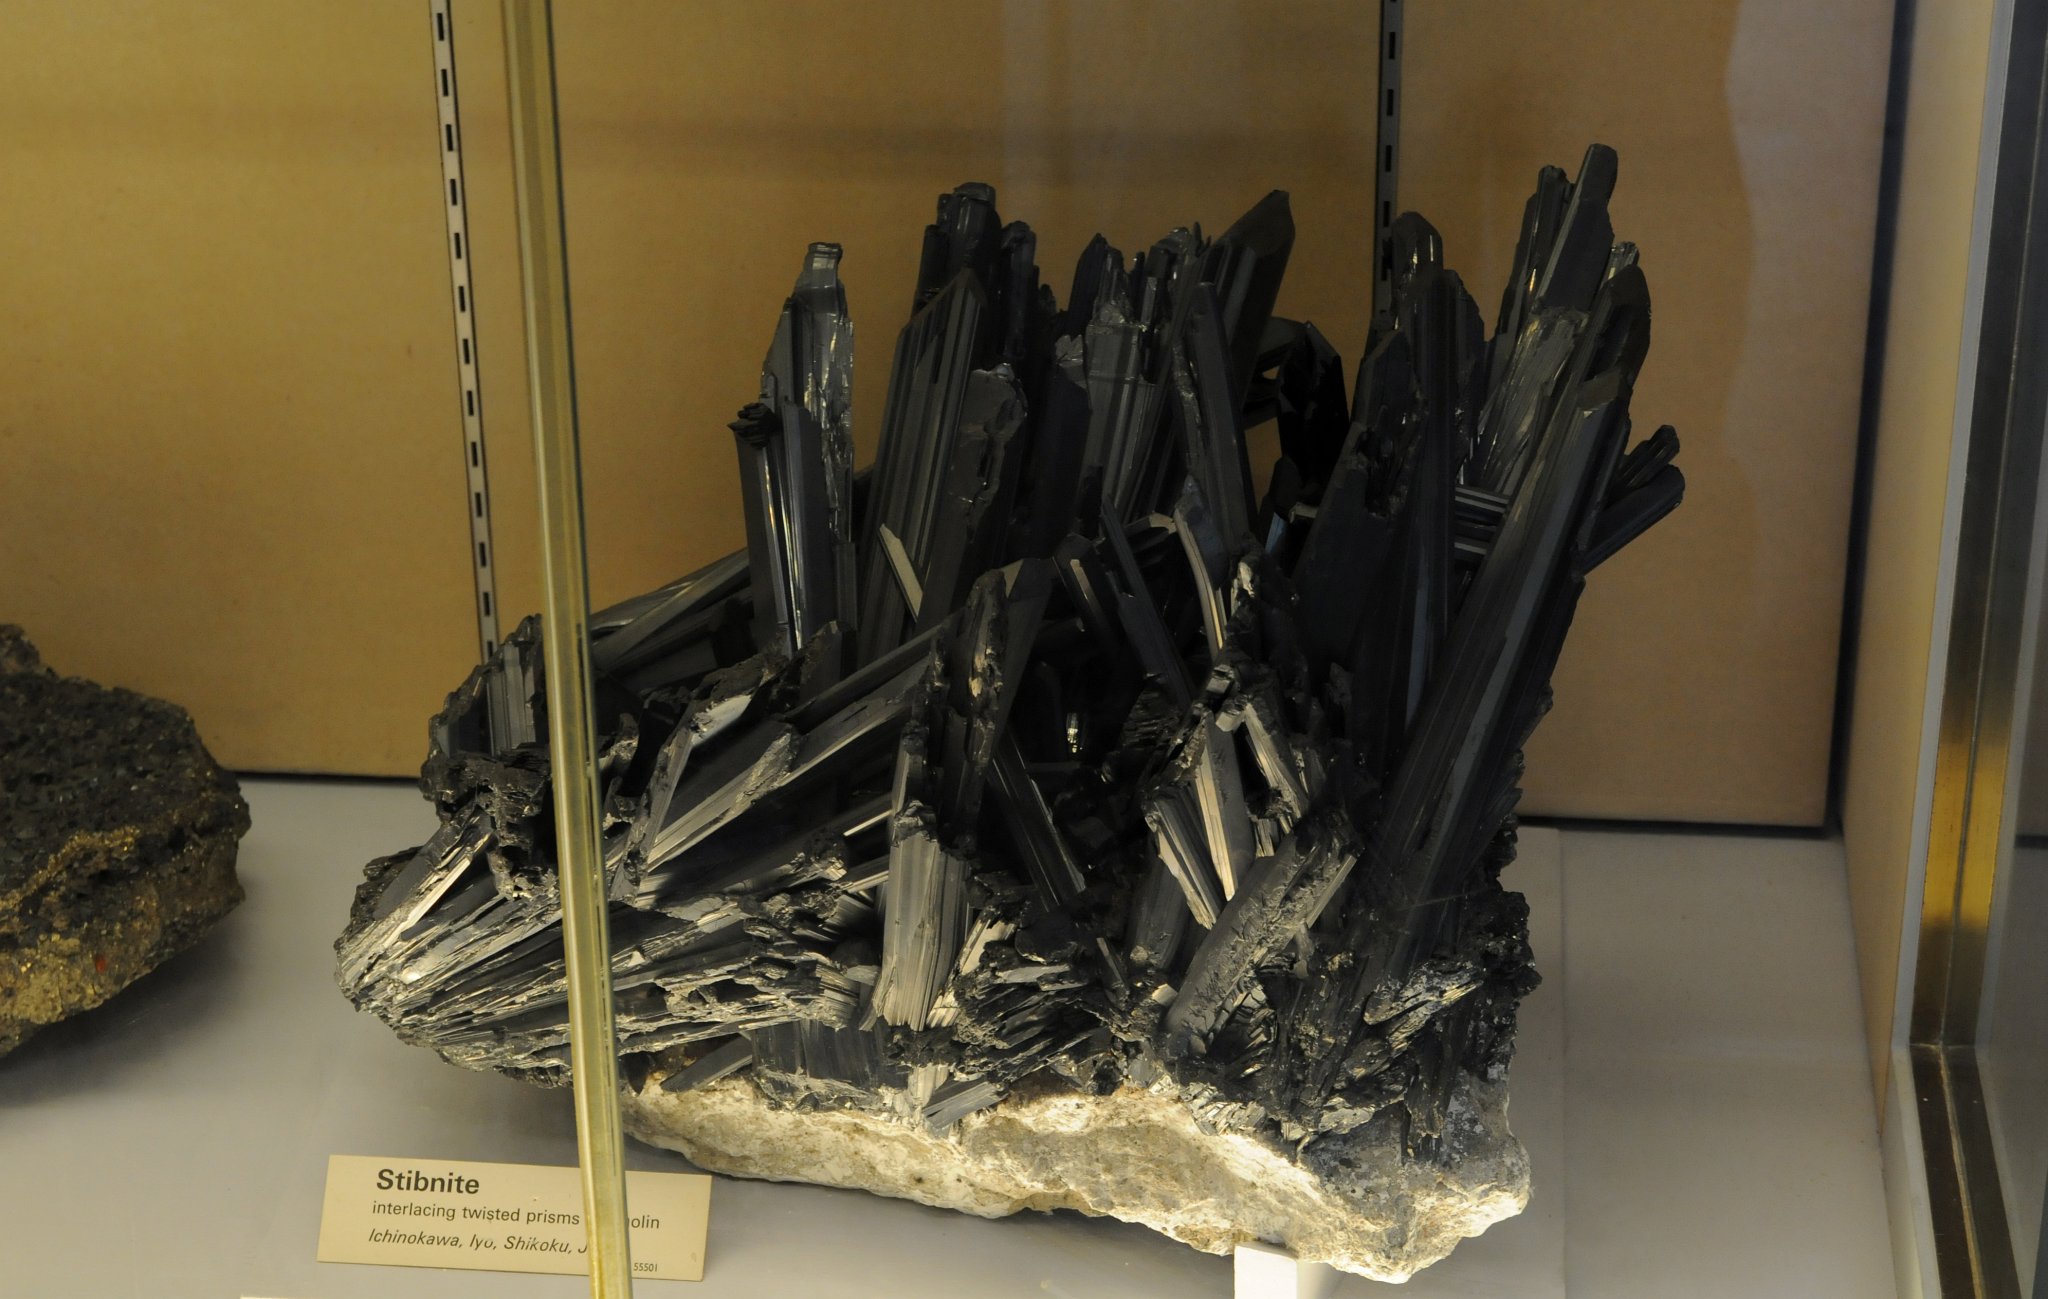 DSC_7427_1.jpg - Antimonit - Stibnit (Haidinger, 1845), chemický vzorec Sb2S3, je kosočtverečný minerál. Další možný název je stibnit, starší české pojmenování je leštěnec antimonový.Název pochází z řeckého slova anthémon – květina, podle tvaru krystalových drúz. Antimonit vzniká na nízkoteplotních až středněteplotních hydrotermálních ložiskách často společně s dalšími minerály jako galenit, baryt, pyrit, sfalerit, kalcit, či zlato. Výjimkou ale nejsou ani metasomatická ložiska uložená ve vápencích a žulách. Tvoří nejčastěji stébelnaté až paprsčité agregáty, které jsou často vertikálně rýhované. Jen v minimálním počtu případů se vyskytuje celistvý či zrnitý. Největší (až 60 cm dlouhé a 5 cm široké) a nejkrásnější krystaly byly nalezeny v Japonsku.